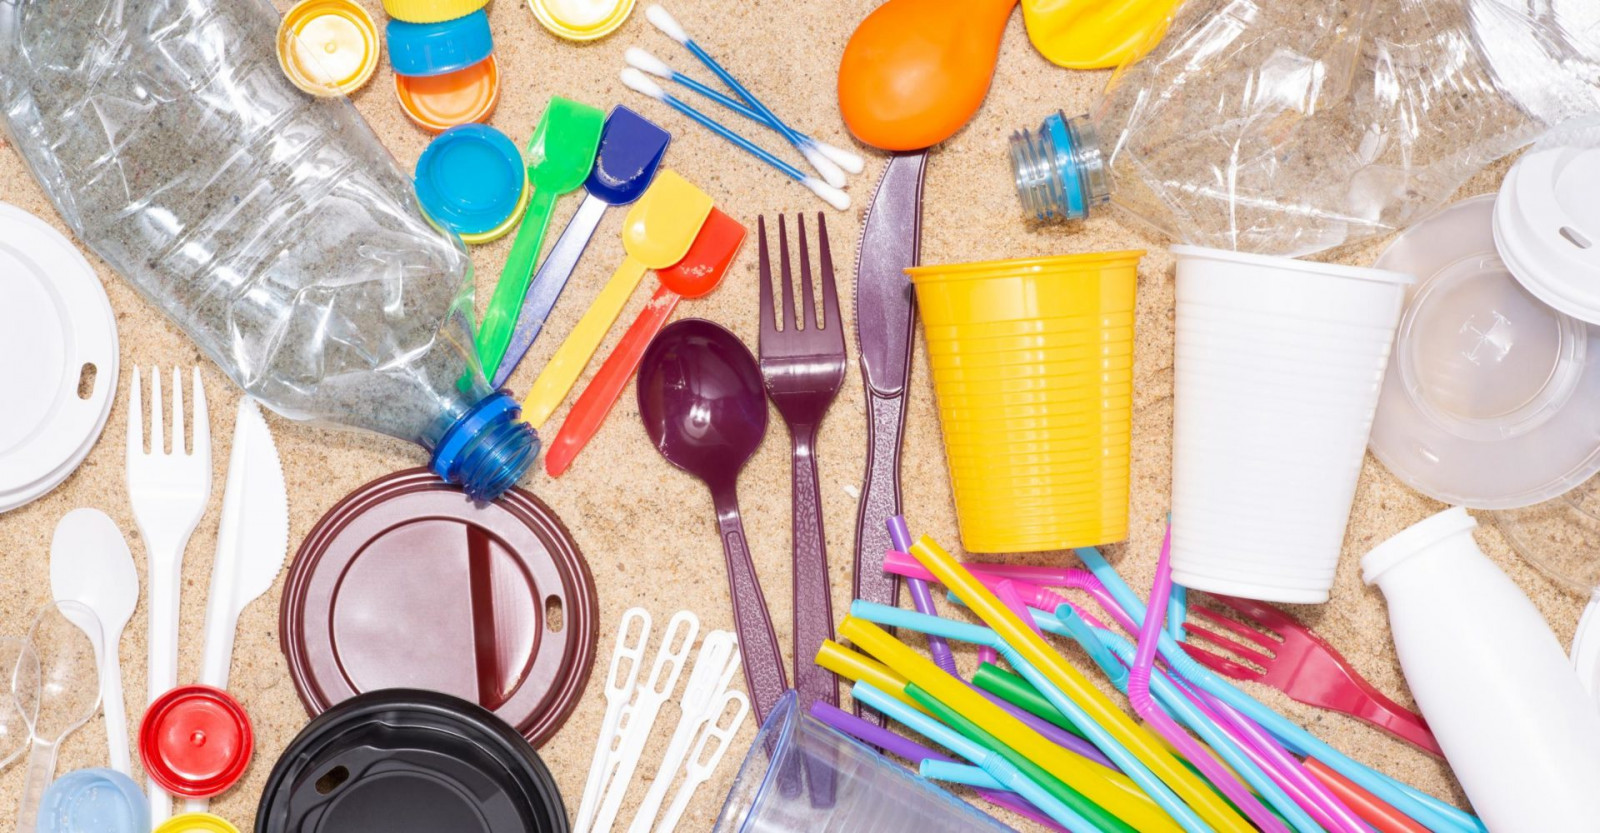 Các loại đồ dùng nhựa chỉ dùng một lần làm gia tăng số lượng rác thải nhựa trong môi trường